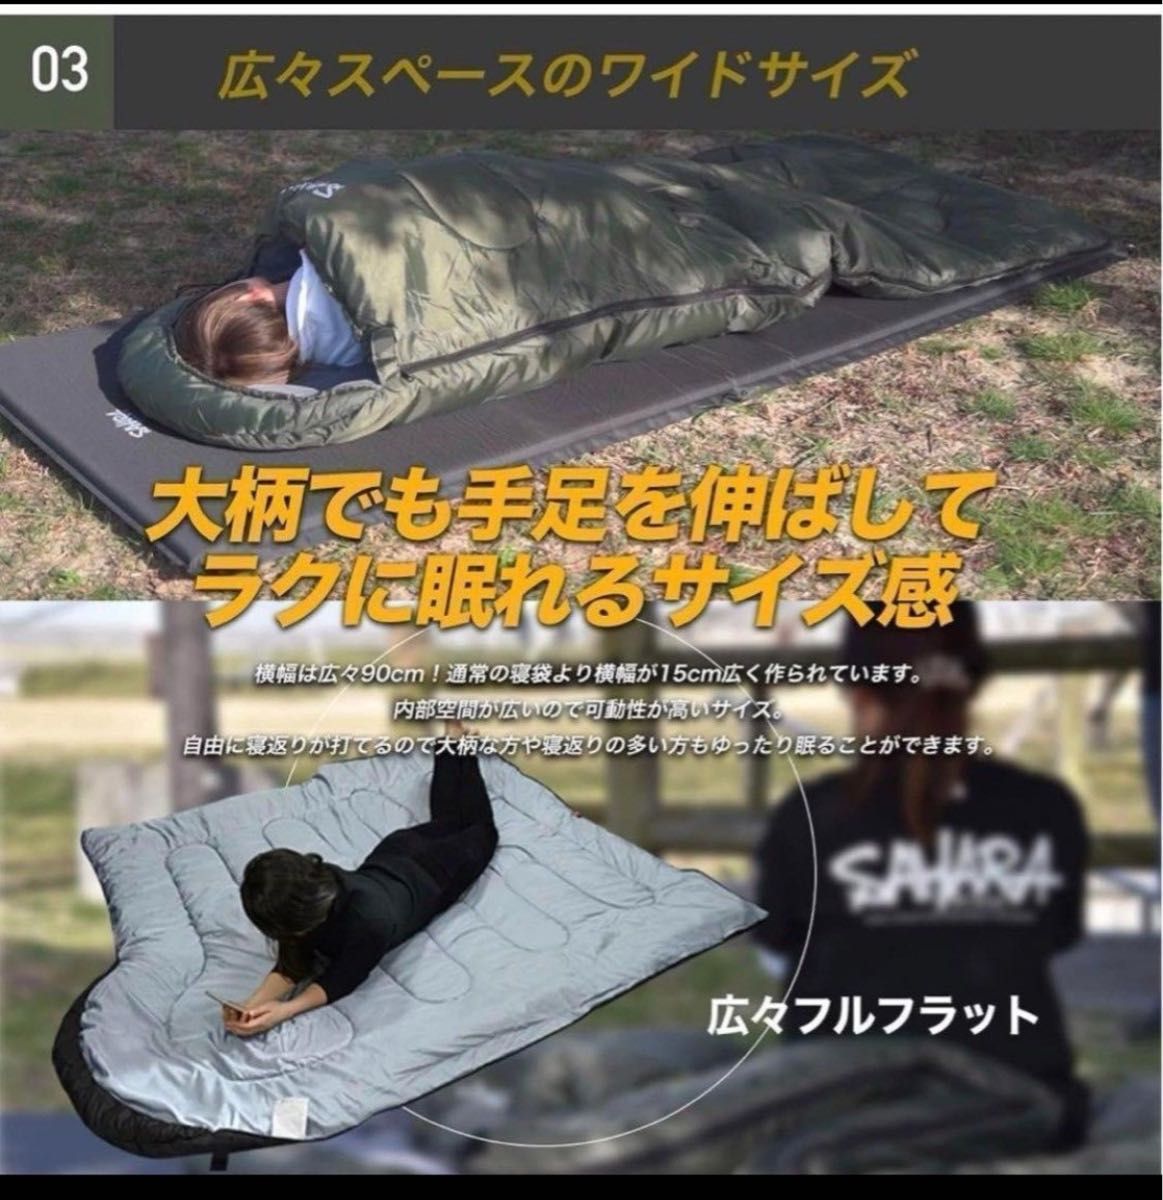 高級素材 寝袋 シュラフ ワイドサイズ 枕付き 人工ダウン 冬用 -15℃対応